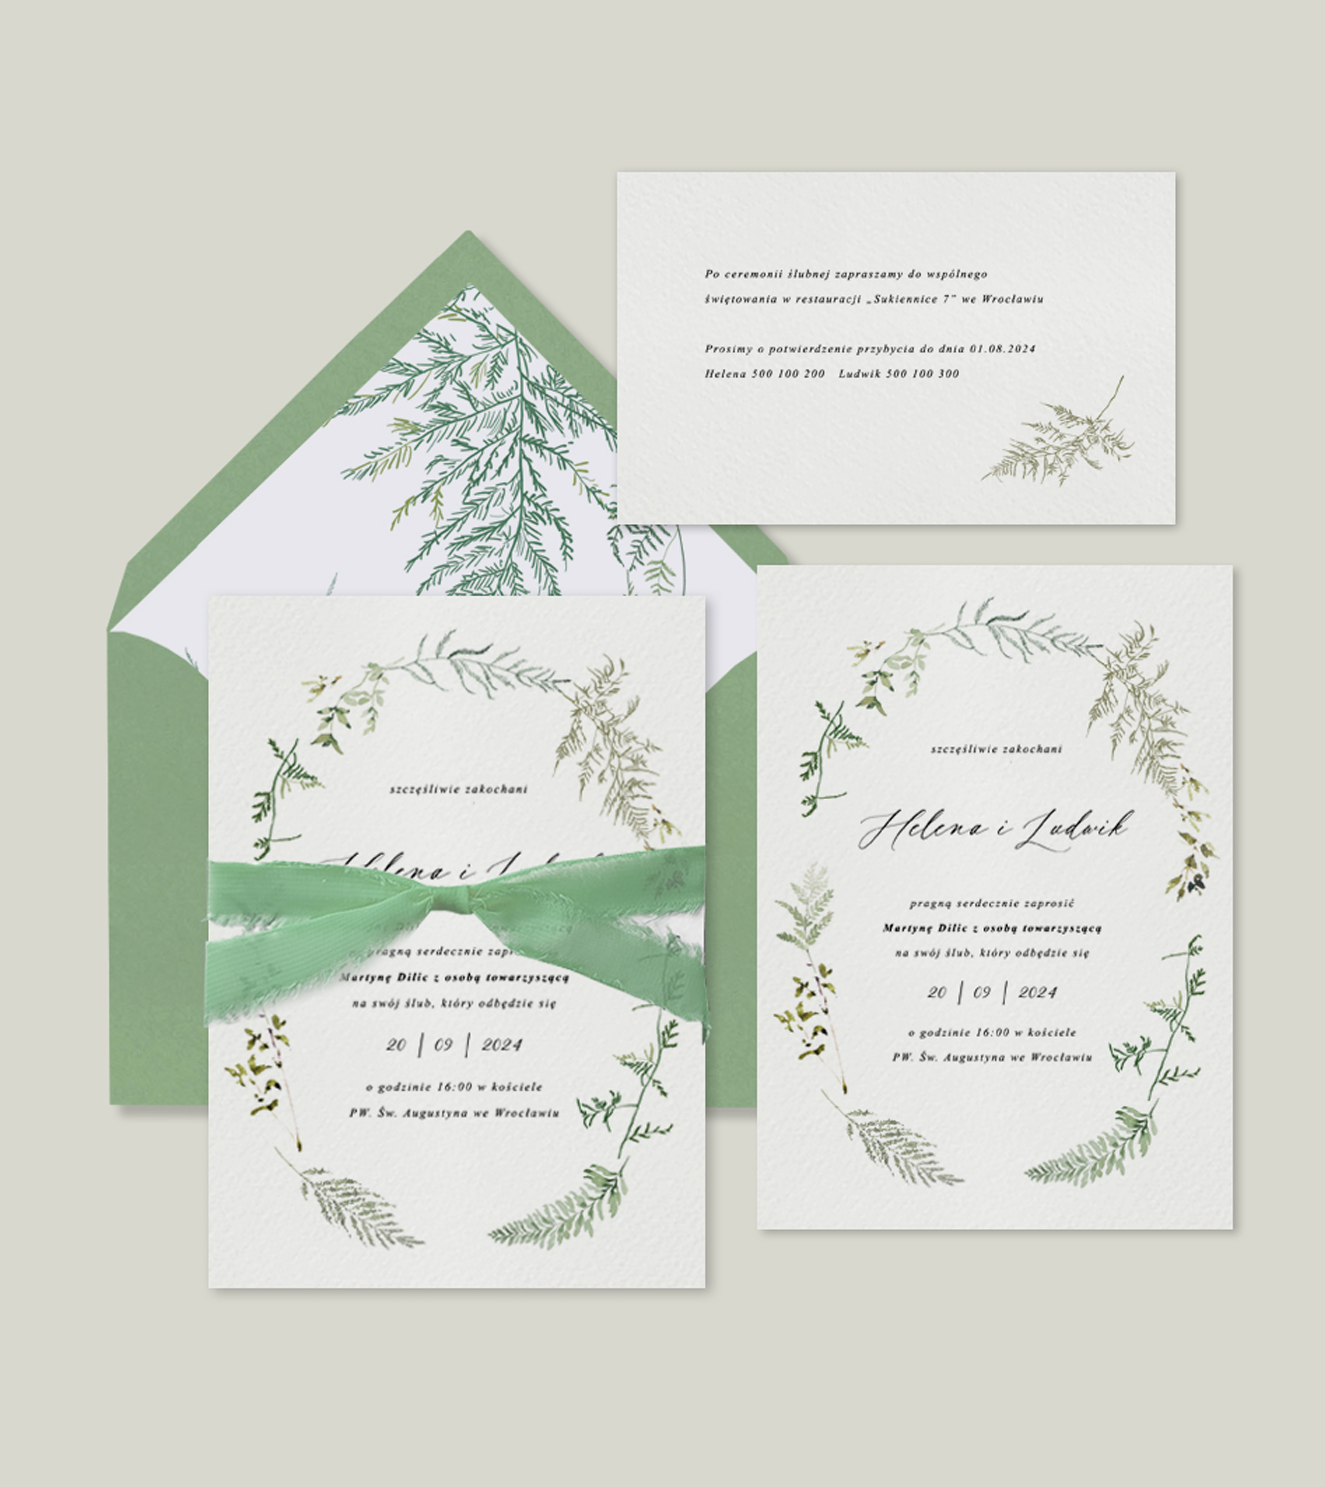 Zielone, nowoczesne, delikatne, romantyczne zaproszenia ślubne z zielona wstążką szyfonową. Motyw przewodni zaproszenia - paproć.